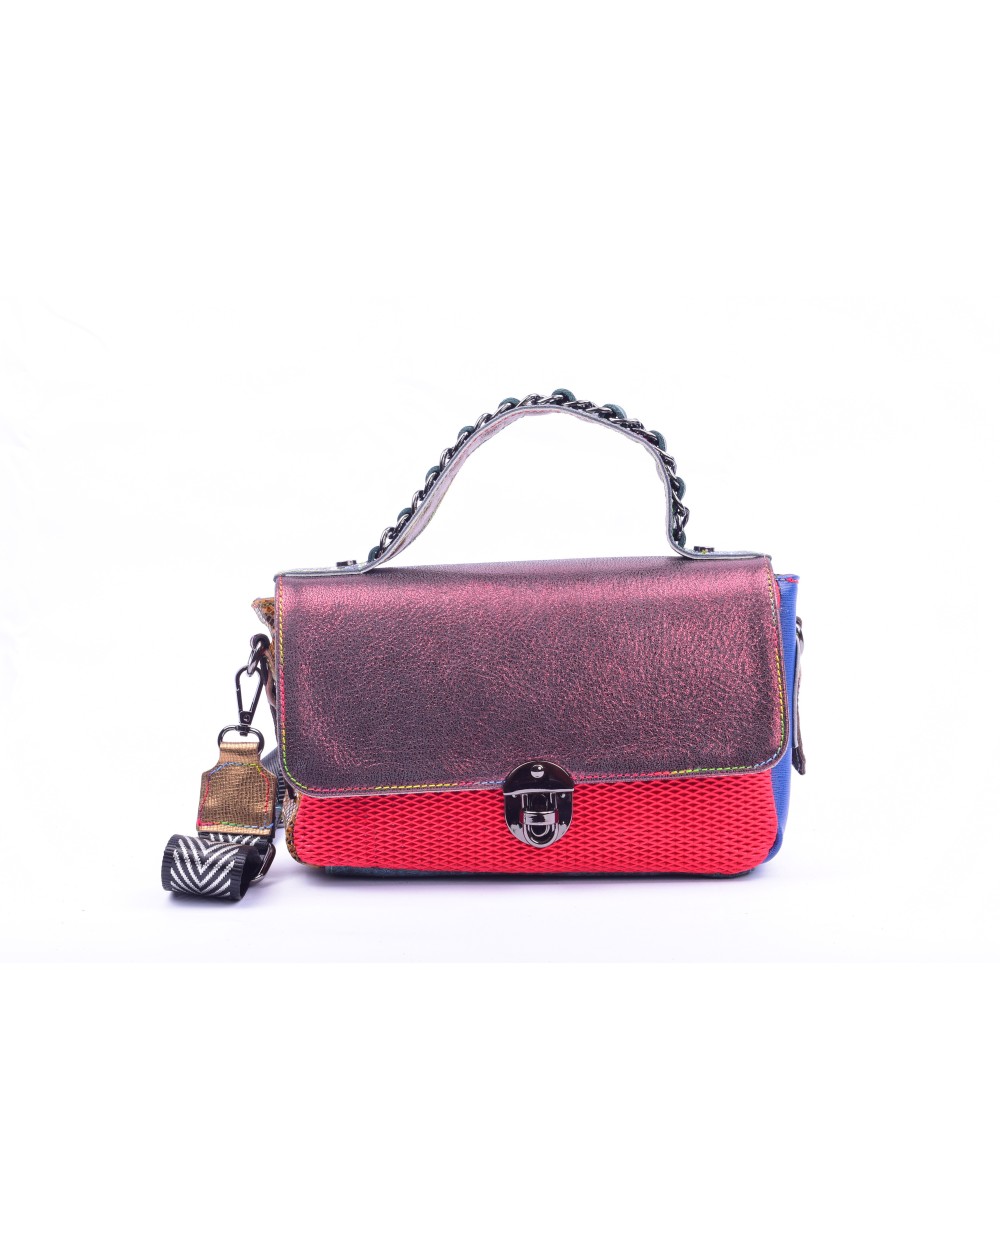 Reiki Bag 5 - Leather handbag